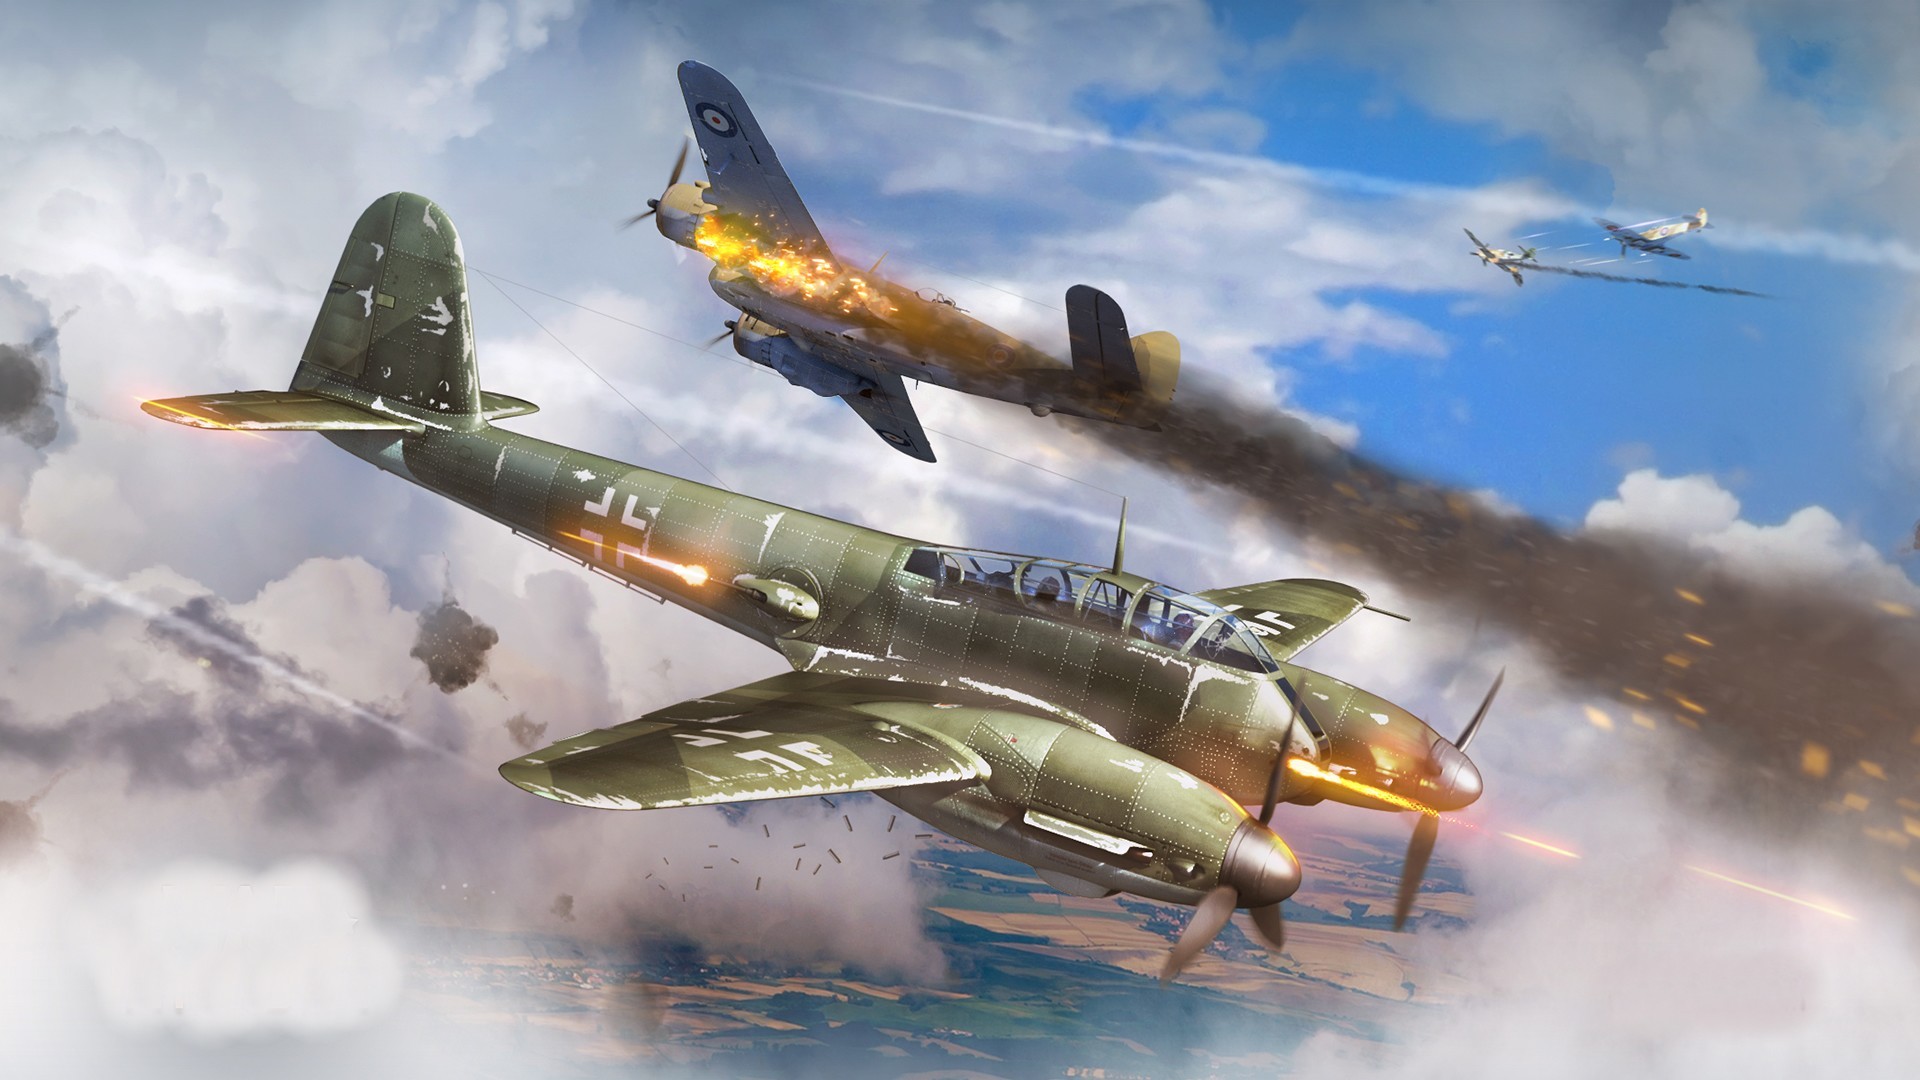 Wallpaper, 1920x1080 px, airplane, dogfight, Germany, Luftwaffe, Me Messerschmitt, military aircraft, War Thunder, World War II 1920x1080